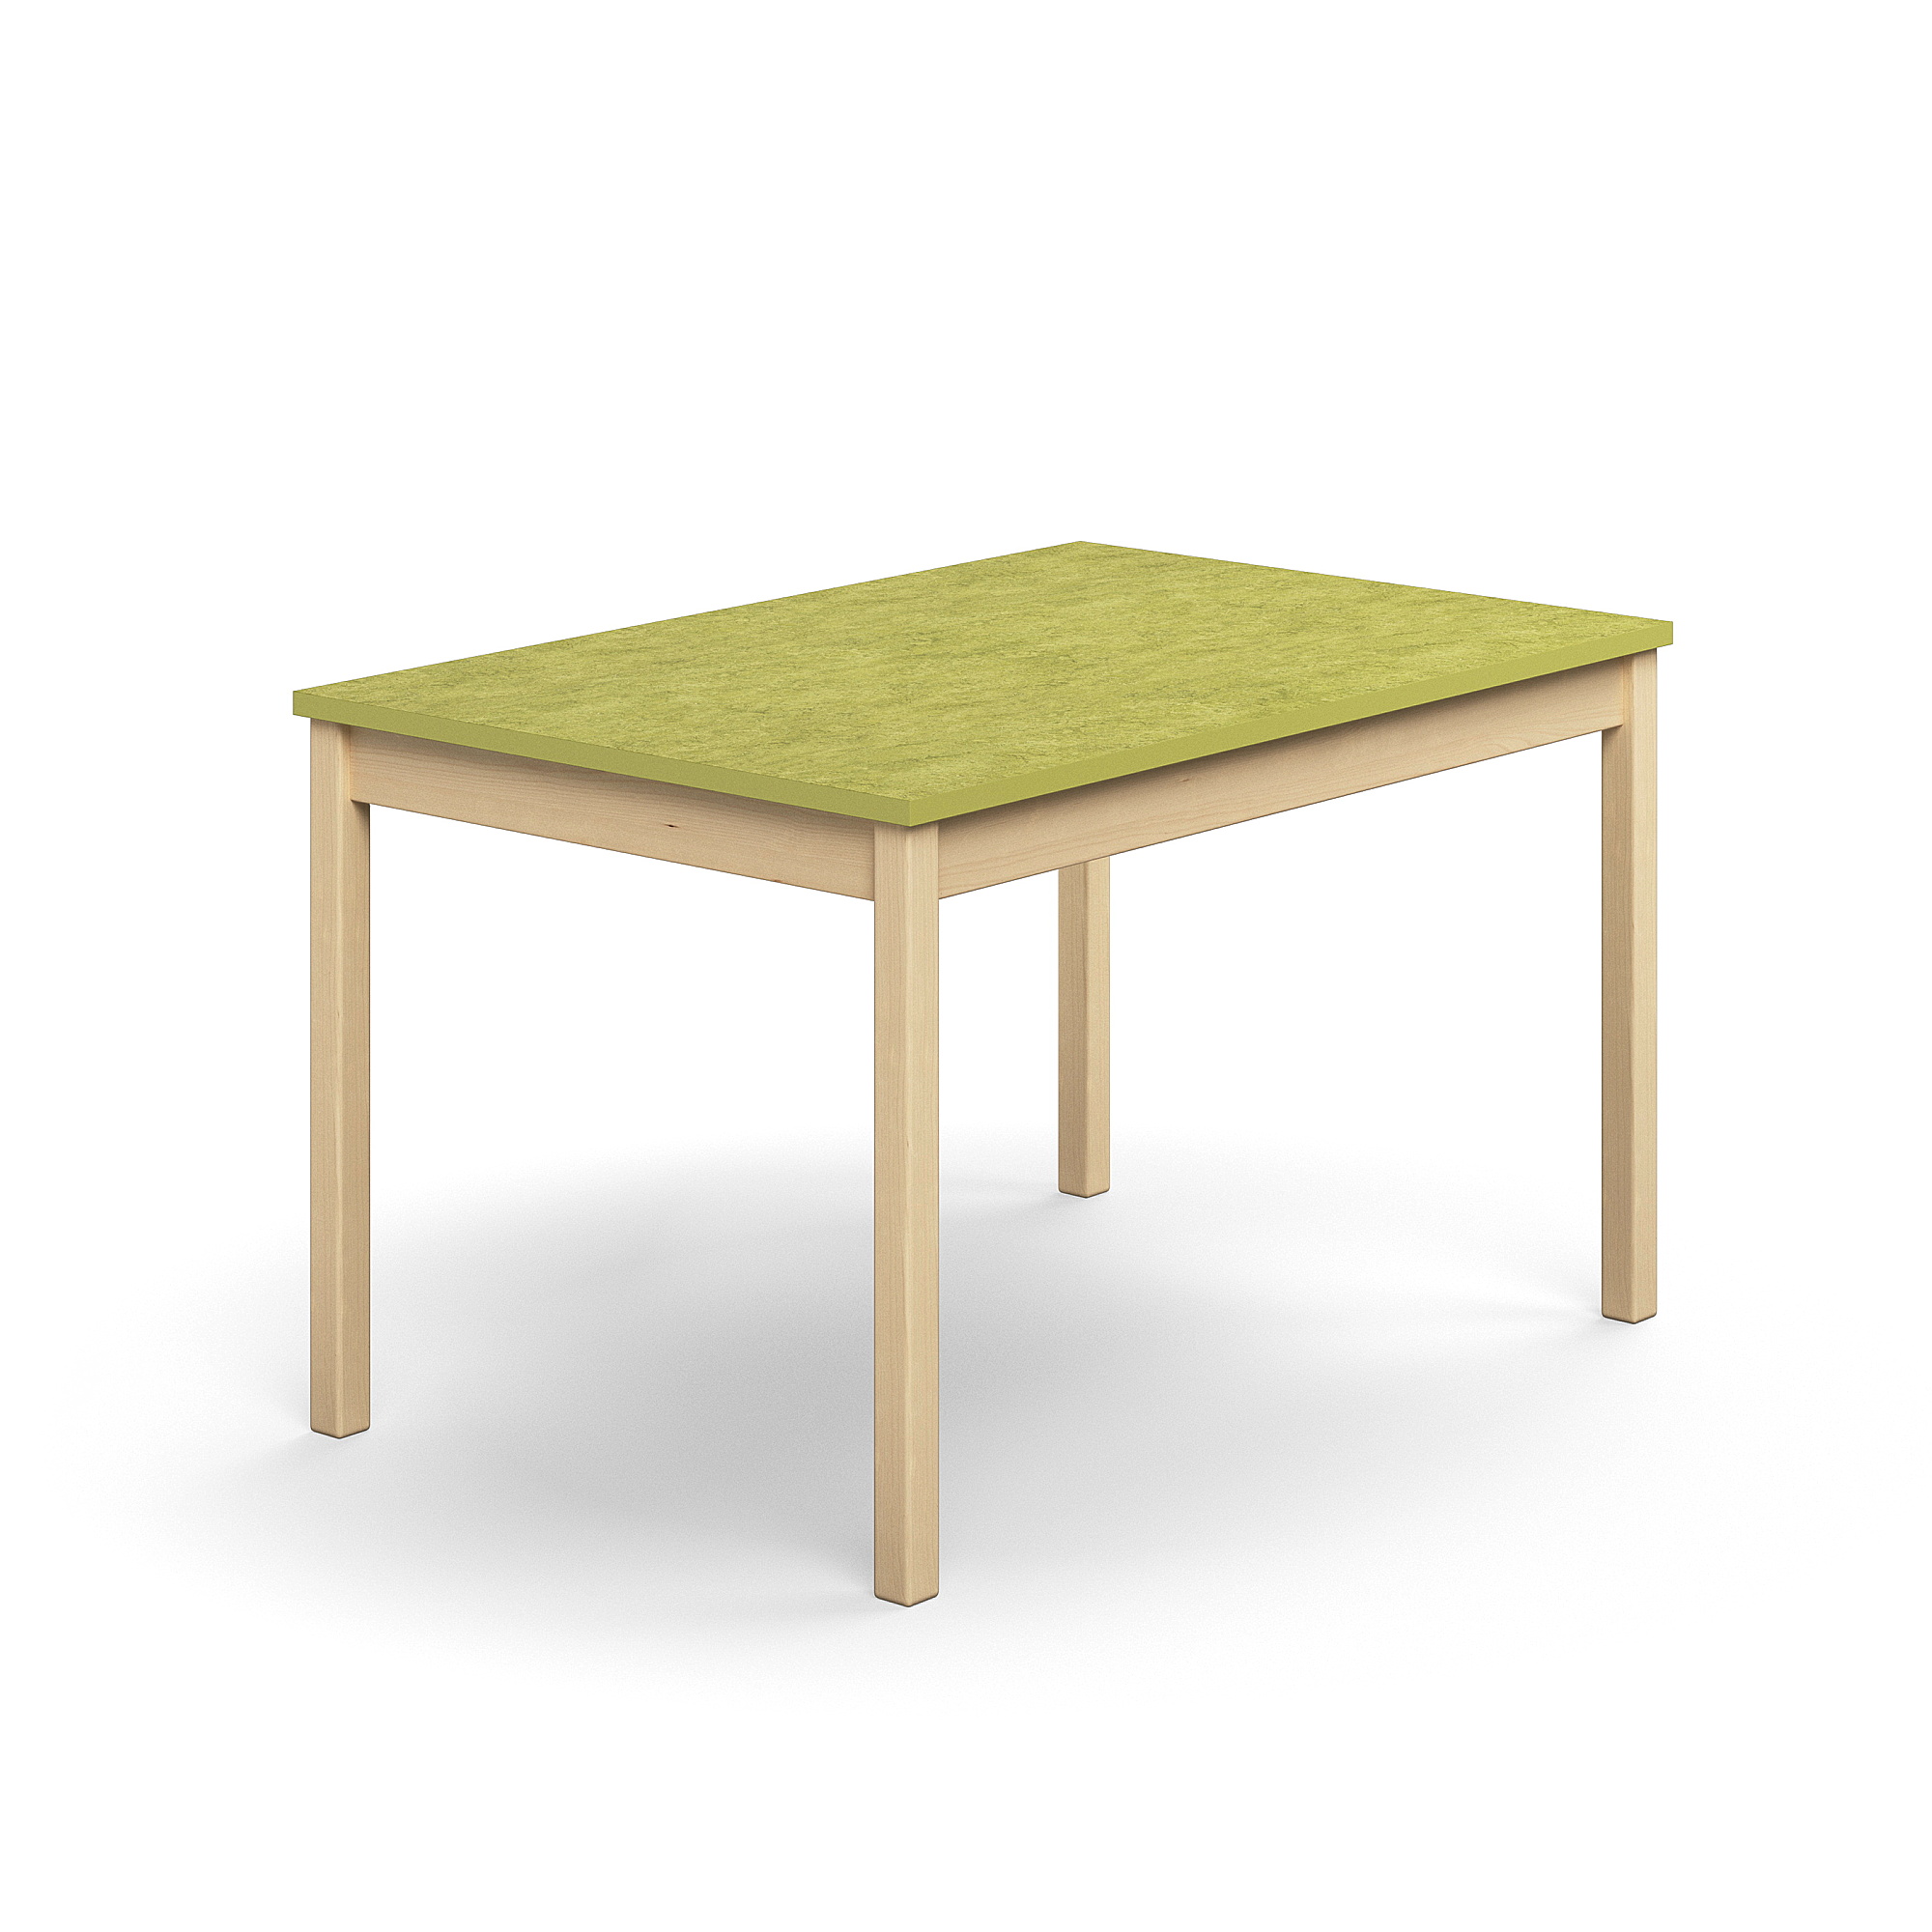 Stůl DECIBEL, 1200x800x720 mm, akustické linoleum, bříza/limetkově zelená